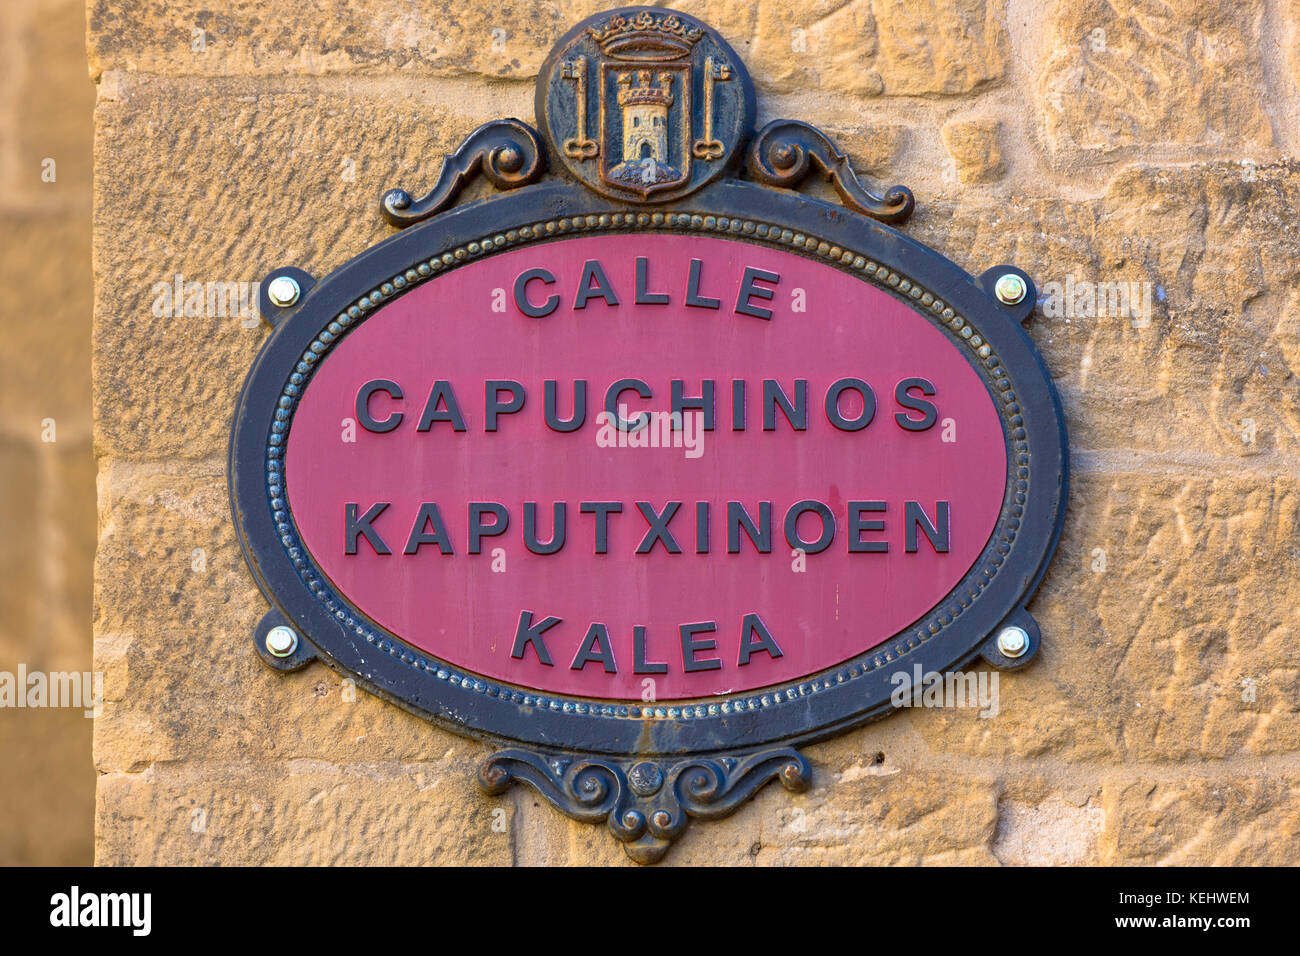 Straßenschild Calle Capuchinos in Spanisch und in baskischer Sprache baskische Sprache in der baskischen Stadt Laguardia in Rioja-Alavesa Bereich von Spanien Stockfoto